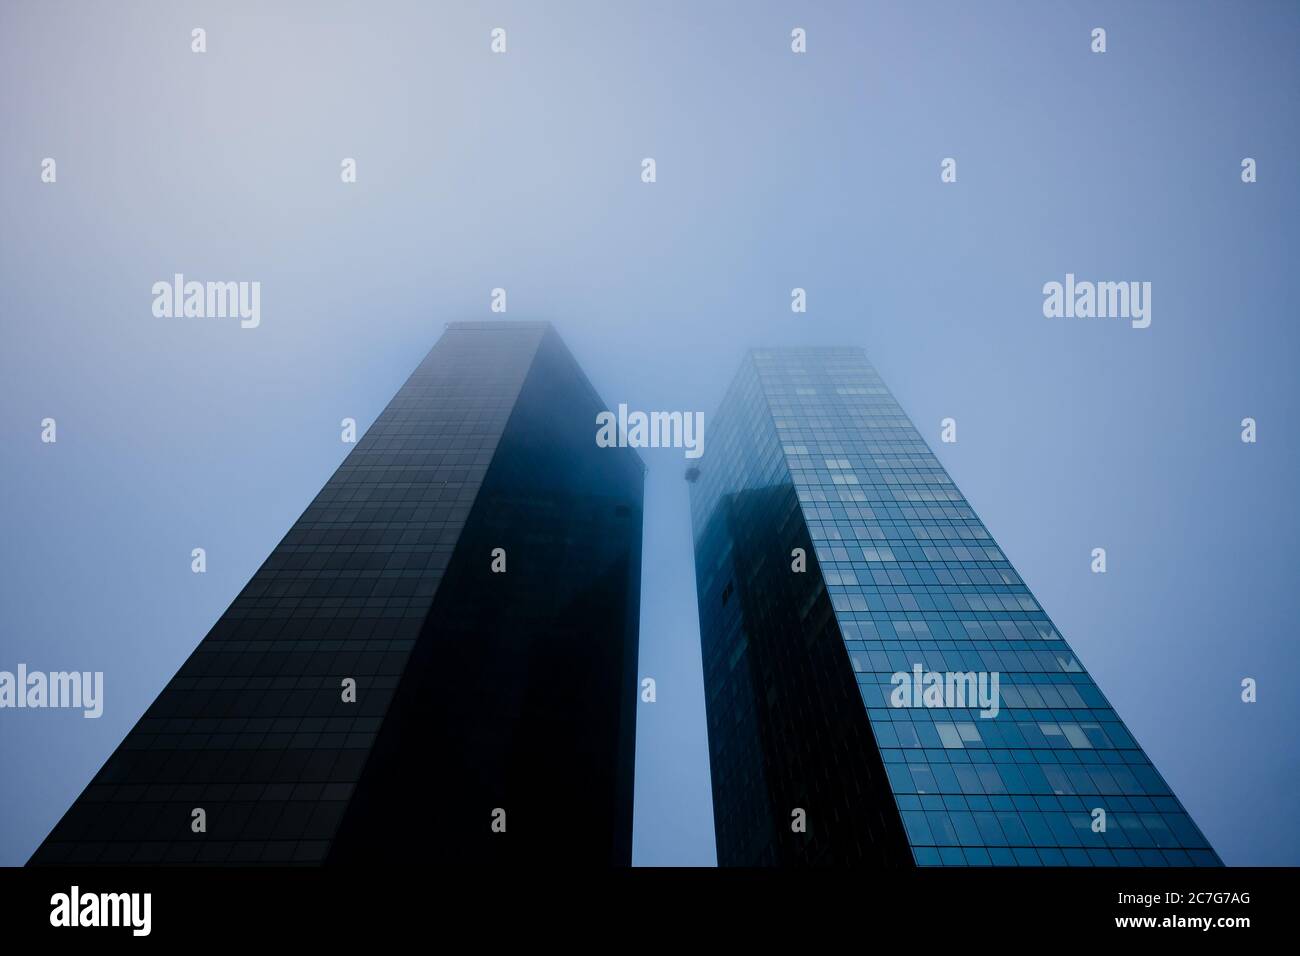 TALLINN, ESTONIA - Jul 18, 2015: Tornimäe twin towers on a foggy morning in Maakri subdistrict. Tallinn, Estonia Stock Photo